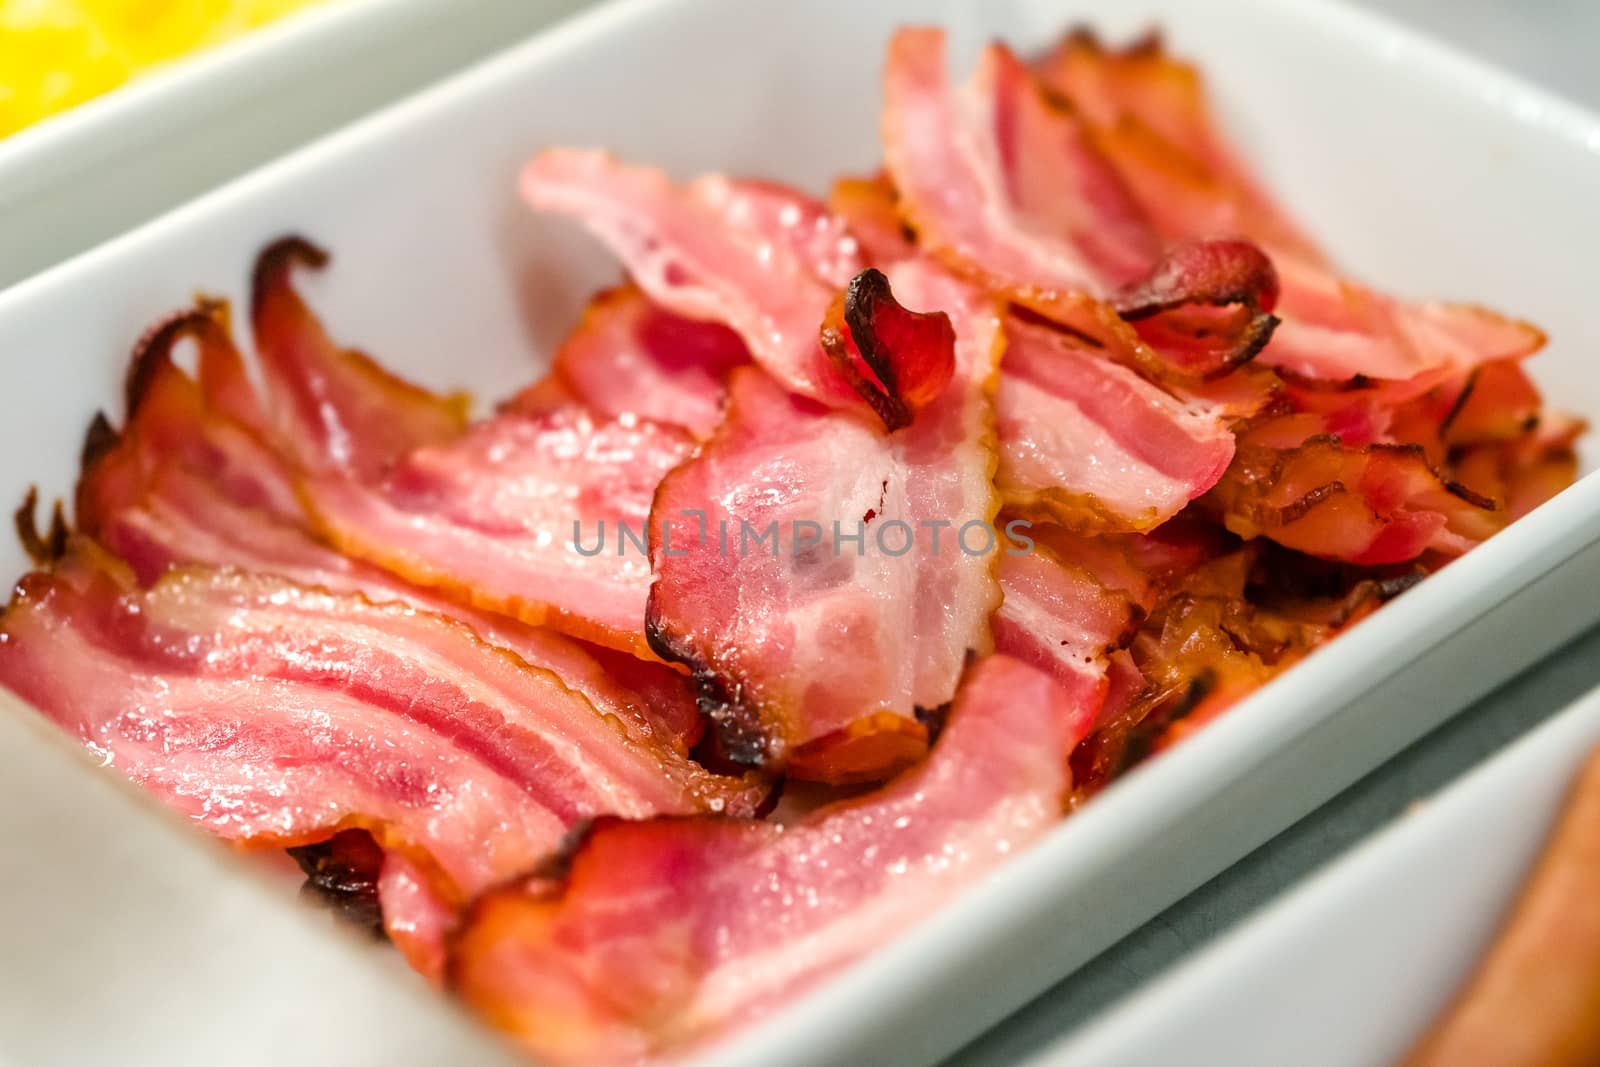 Bacon for Breakfast